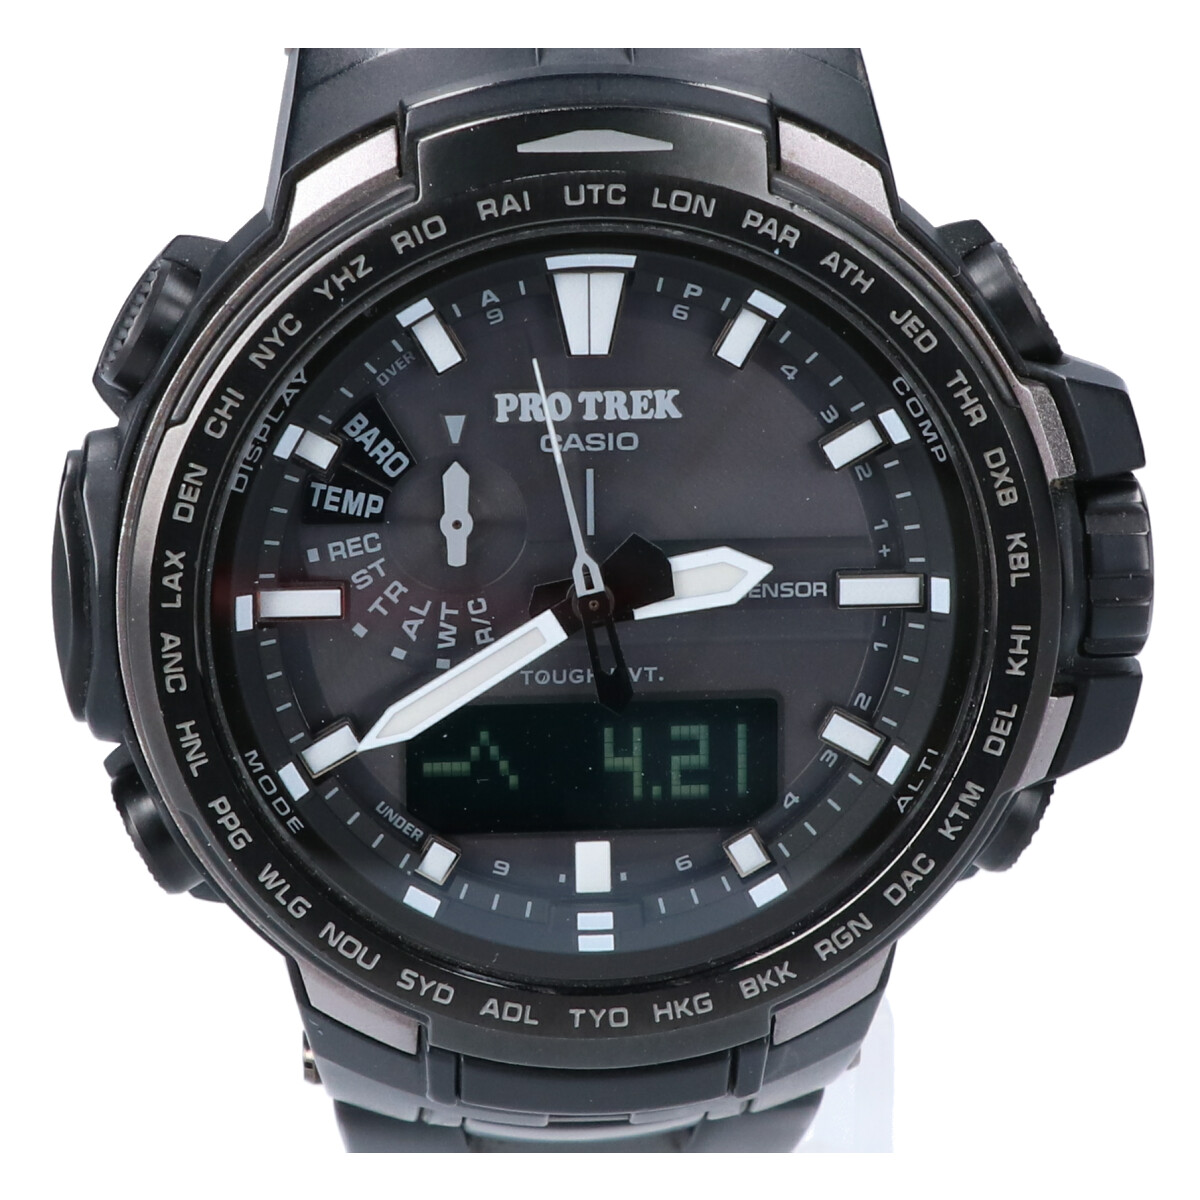 カシオのPRW-6100YT-1JF プロトレック トリプルセンサー 腕時計の買取実績です。